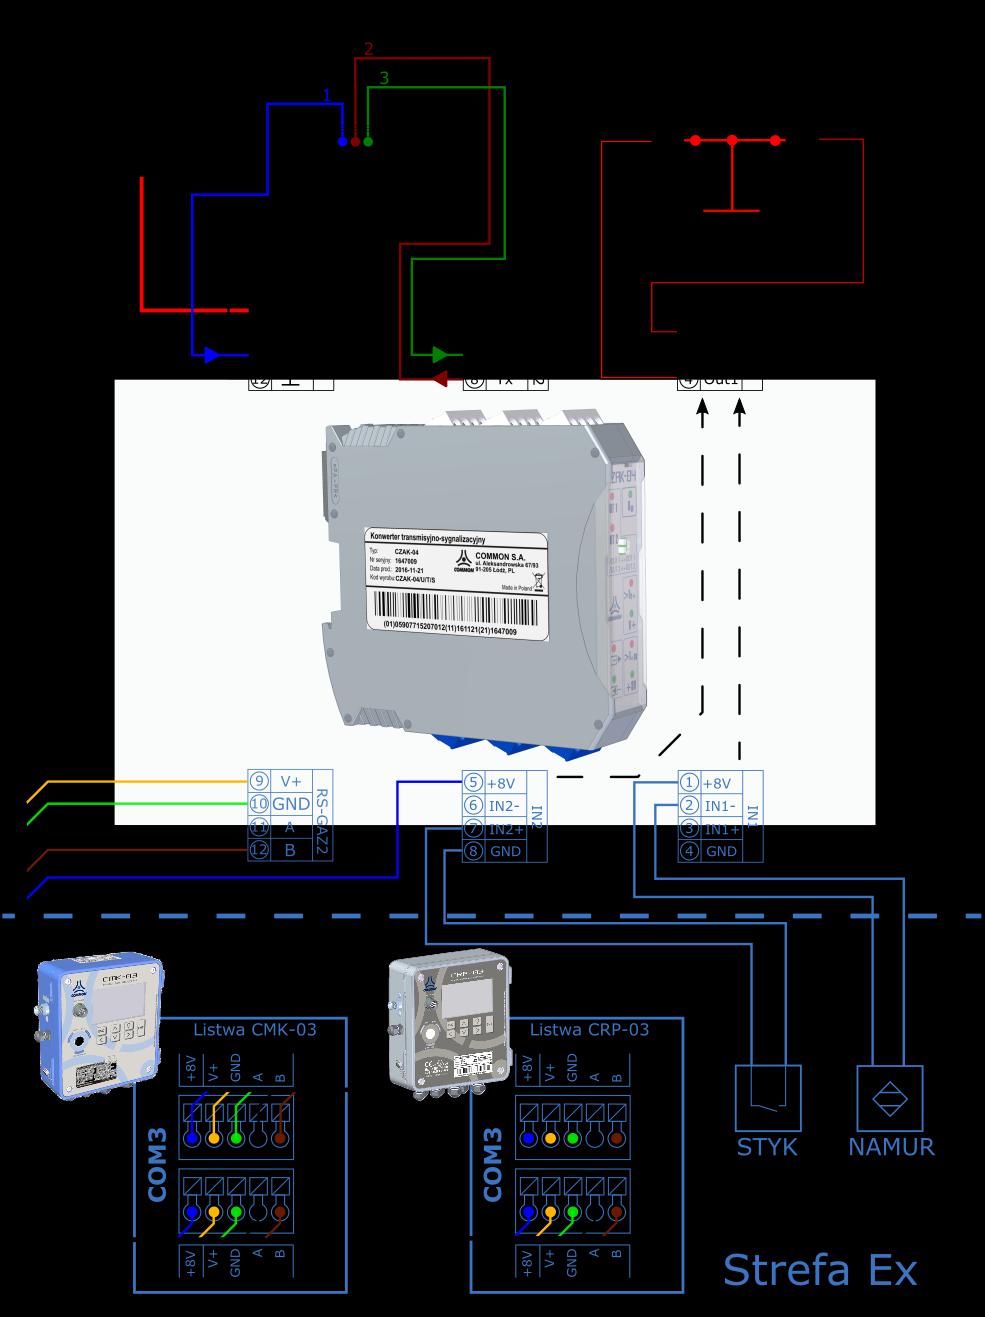 COMMON SA Instrukcja obsługi i DTR CMK-03 GND, A, B do identycznie oznaczonych zacisków wybranego portu transmisji w CMK-03: COM1 TUCHEL lub listwy